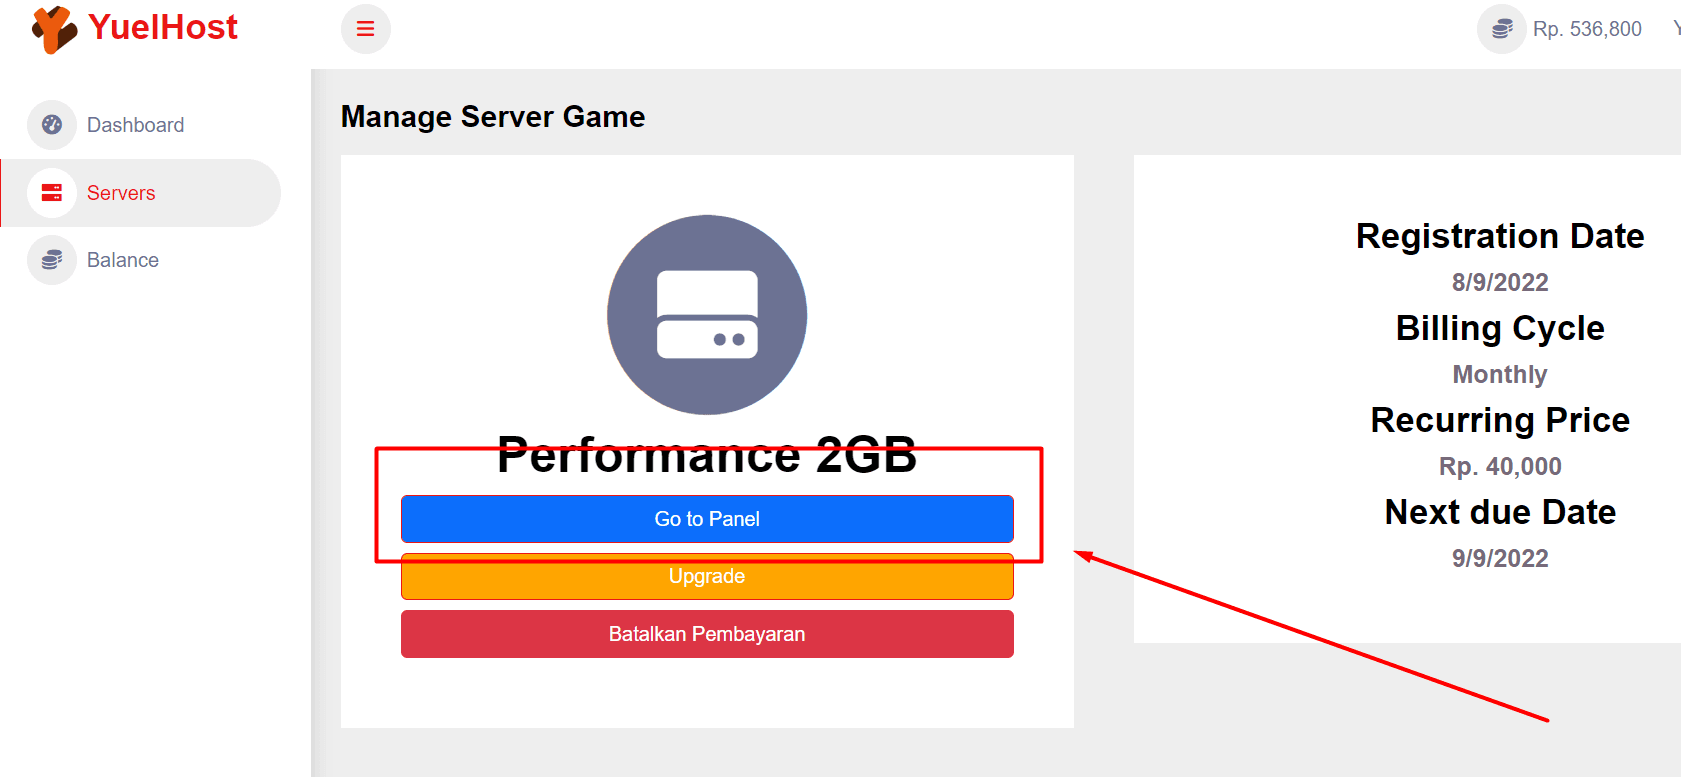 Manage Server